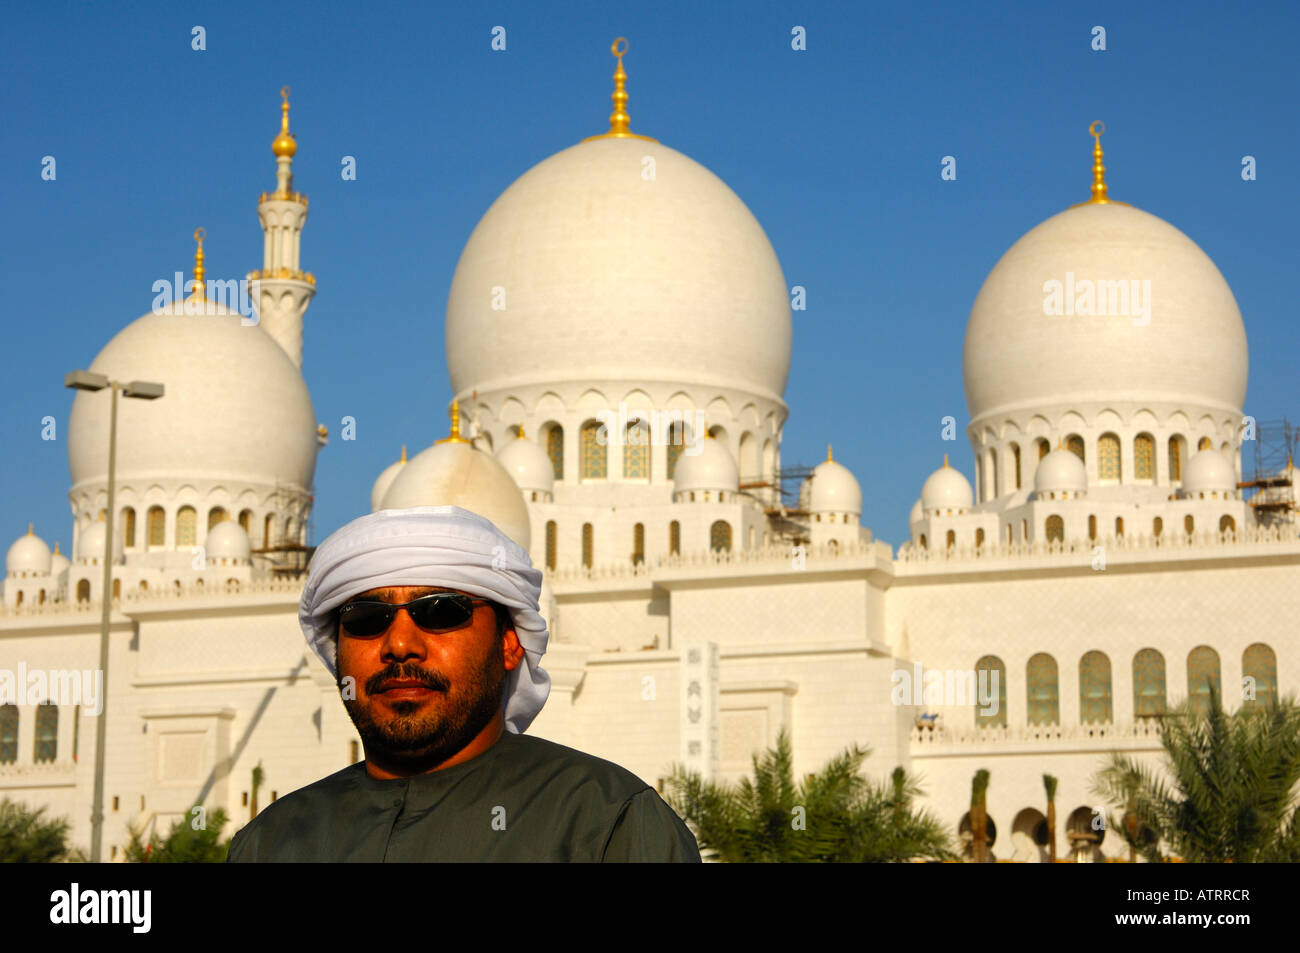 Le cupole principale di Sheikh Zayed Bin Sultan Al Nahyan mosque grande Moschea di Abu Dhabi Emirati Arabi Uniti Foto Stock